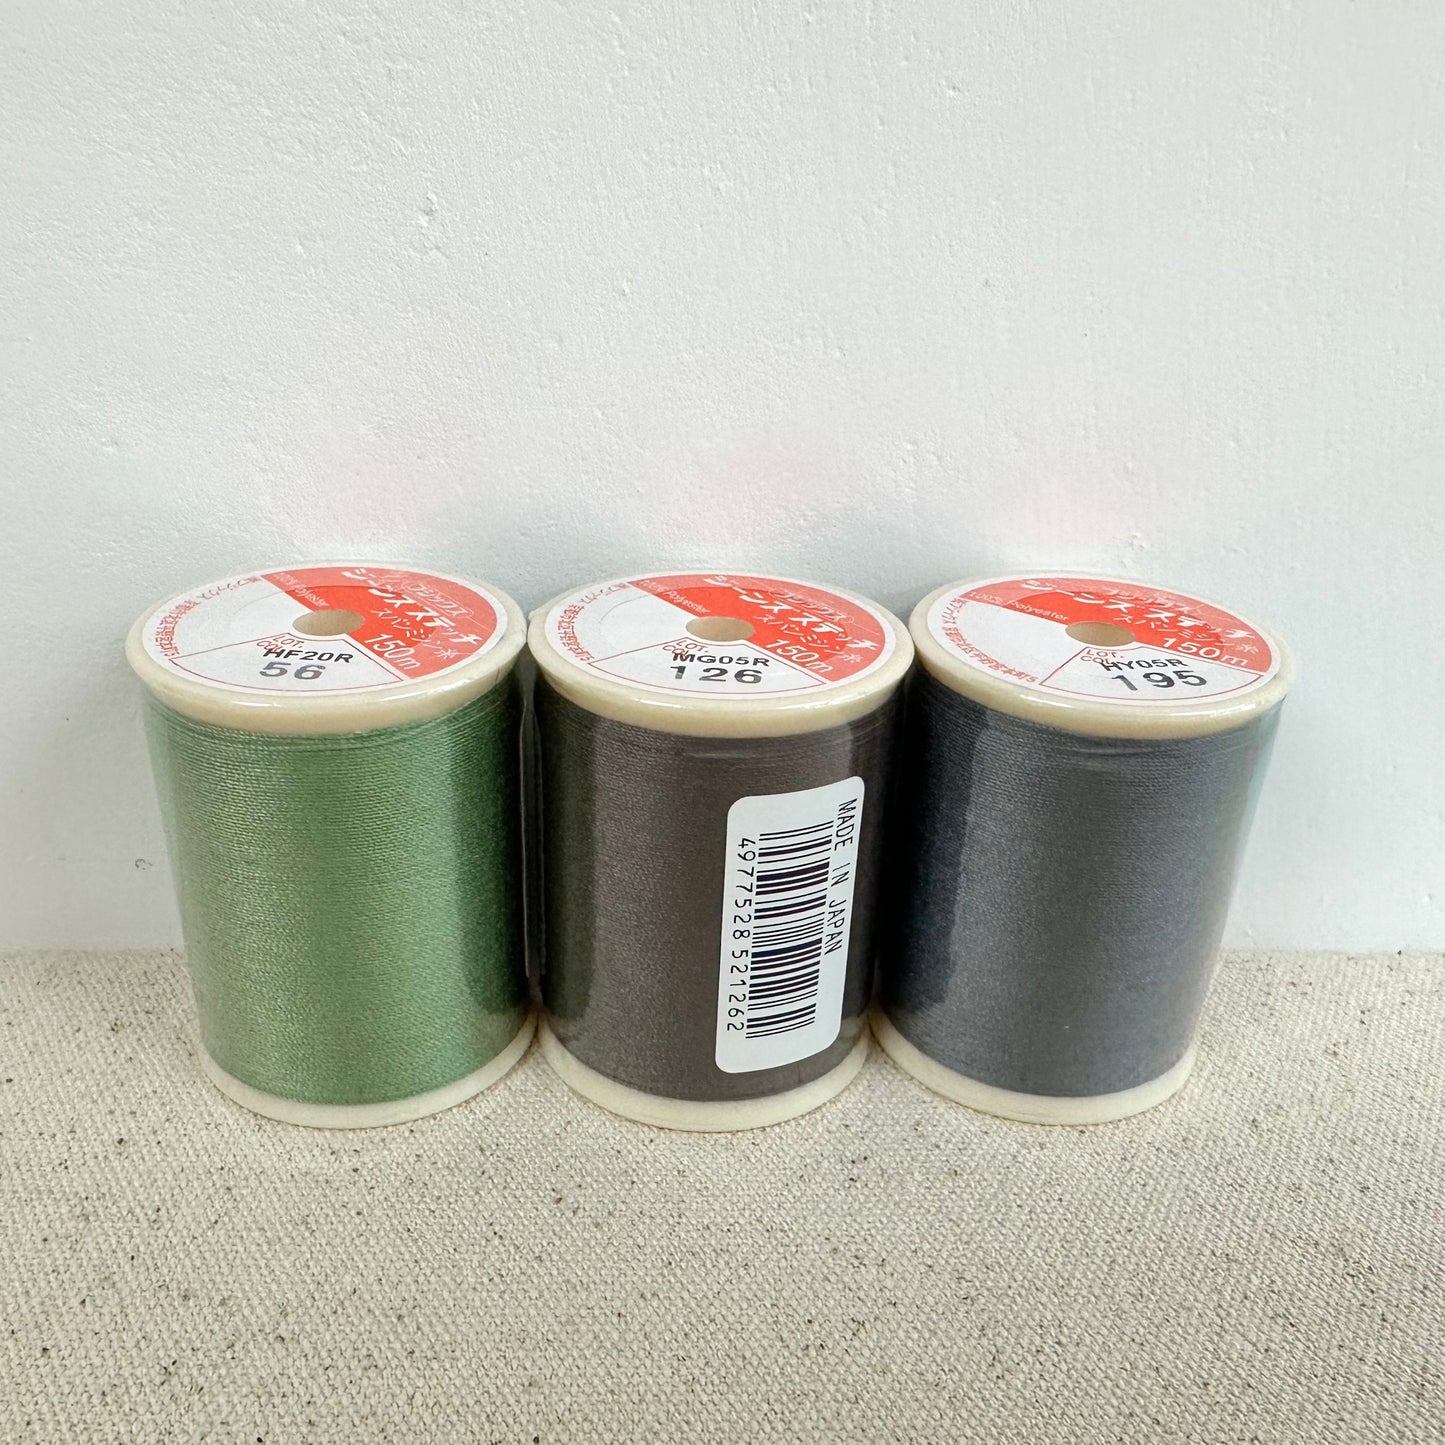 Fujix | Pice #20 jeans stitch sewing thread 牛仔布厚布車縫線 150m - 16 colors